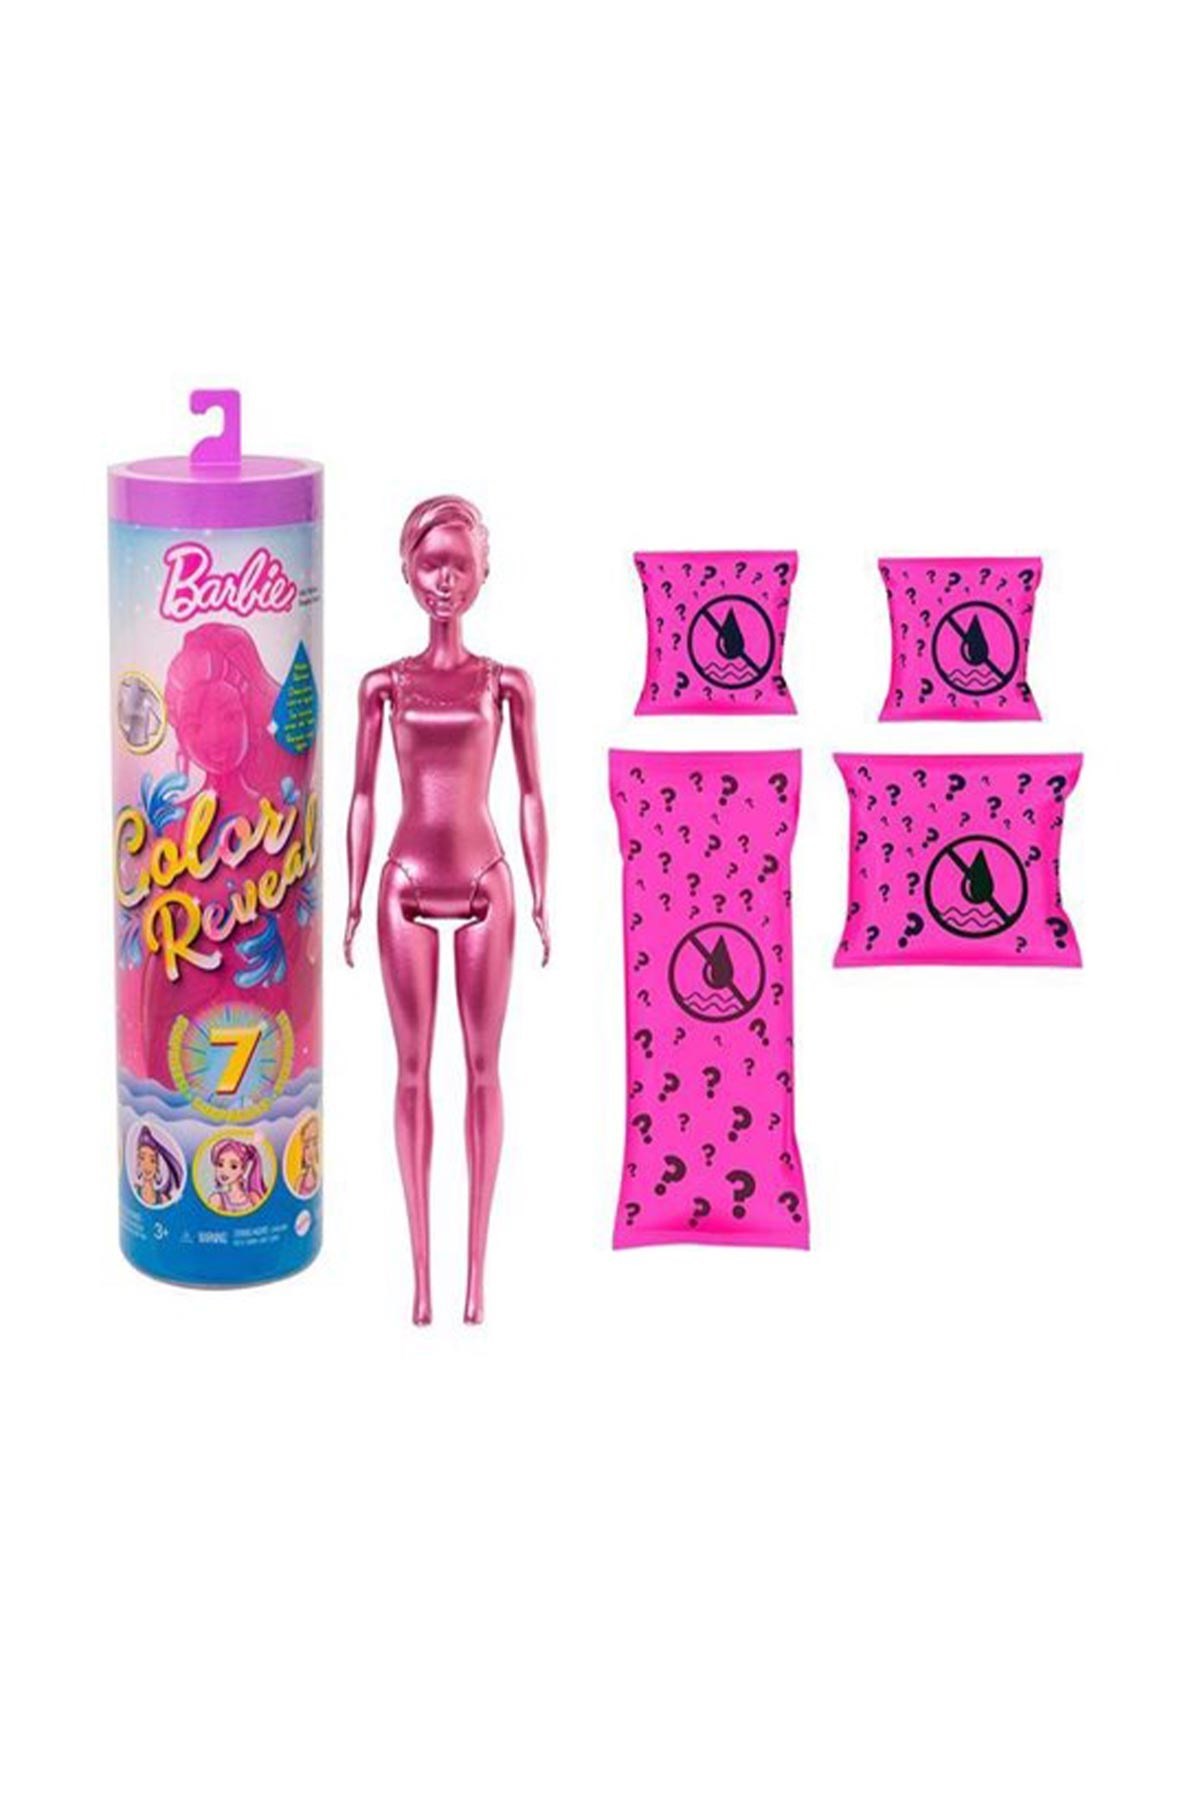 Barbie Color Reveal Renk Değiştiren Sürpriz Barbie Işıltılı Bebekler Serisi GTR93